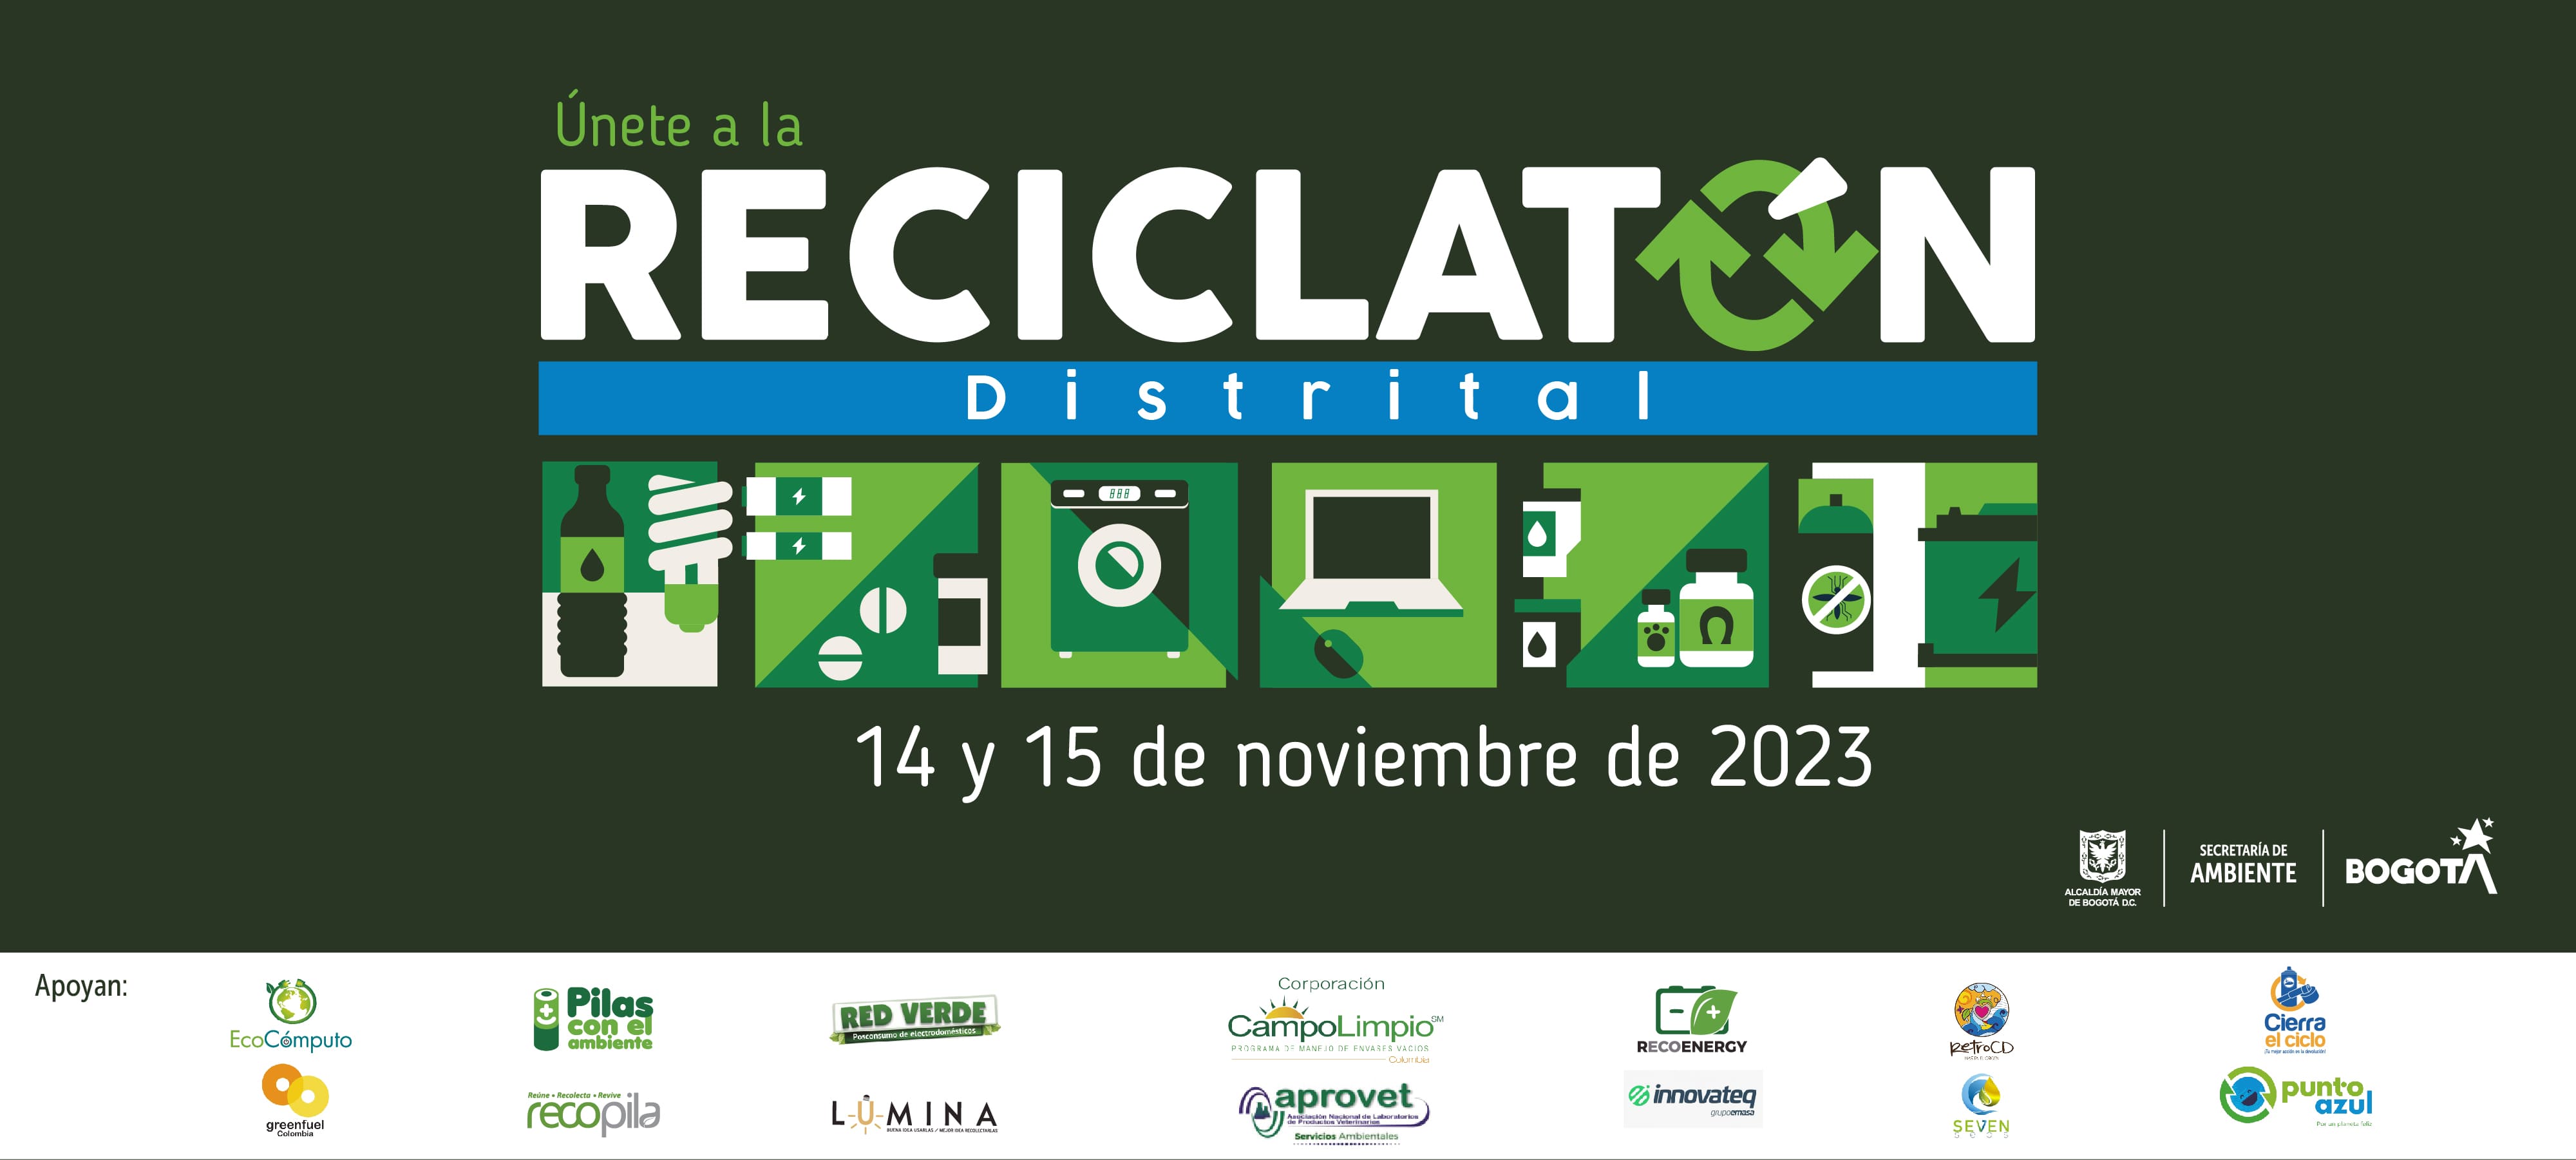 El 14 y 15 de noviembre será la jornada de reciclatón 2023